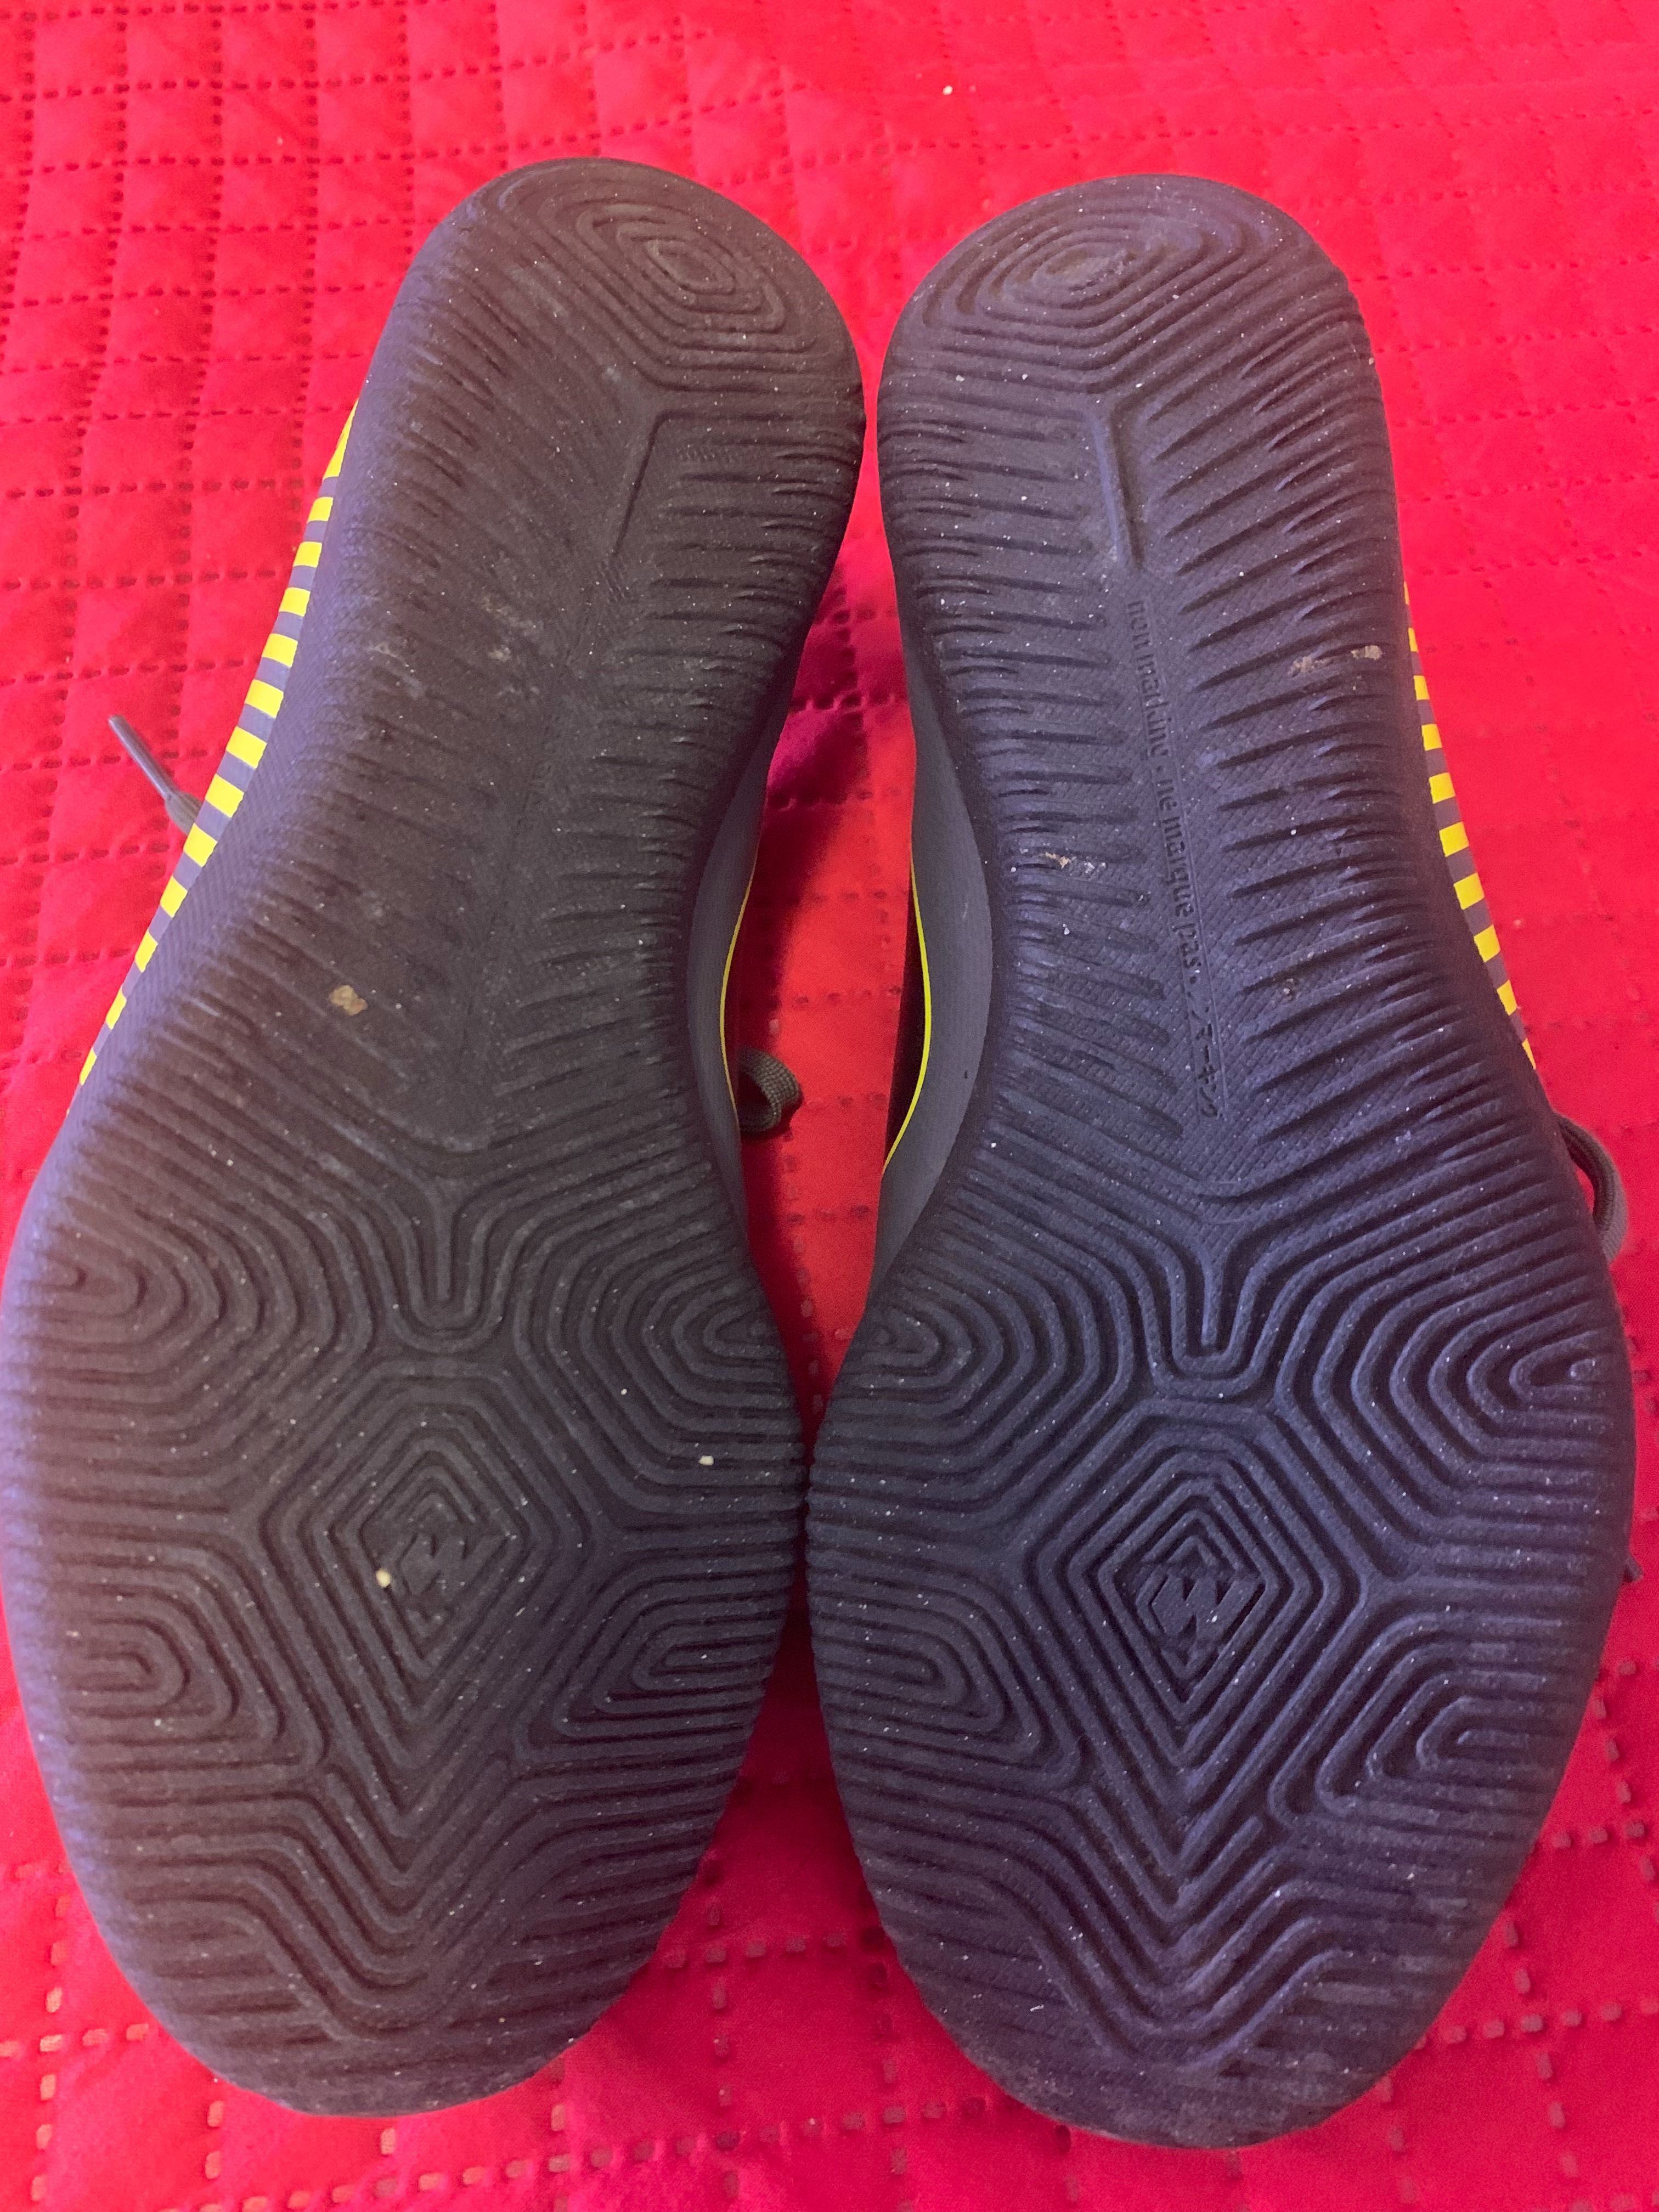 Sapatilhas de futsal Nike Mercurial tamanho 38 praticamente novas